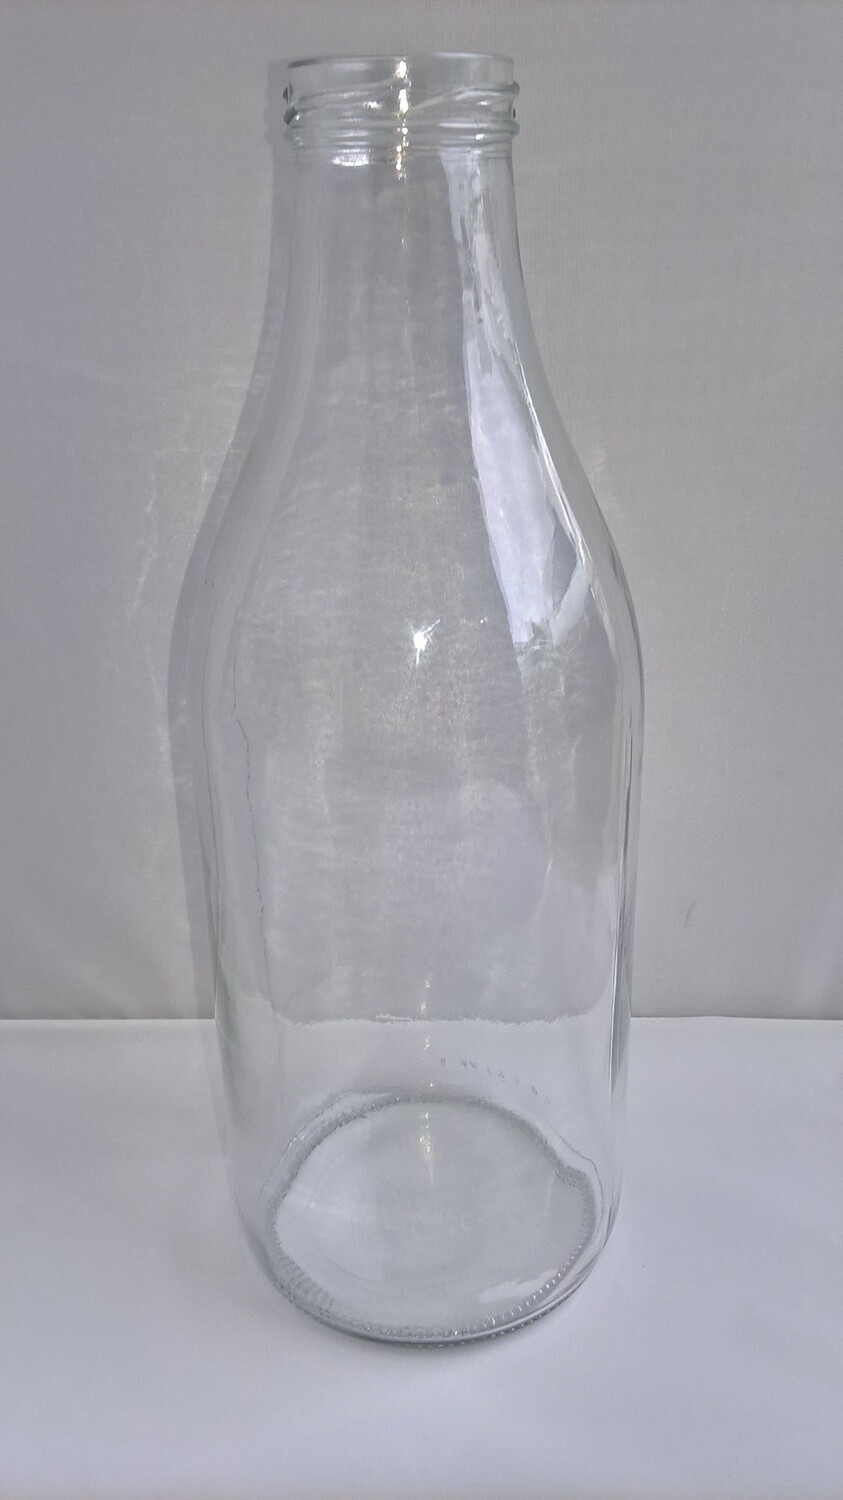 Milk Glass Bottles Vintage Style 1 litre/1000ml, Pack size: Pack of 1 x 1 Litre/1000ml Milk Bottles